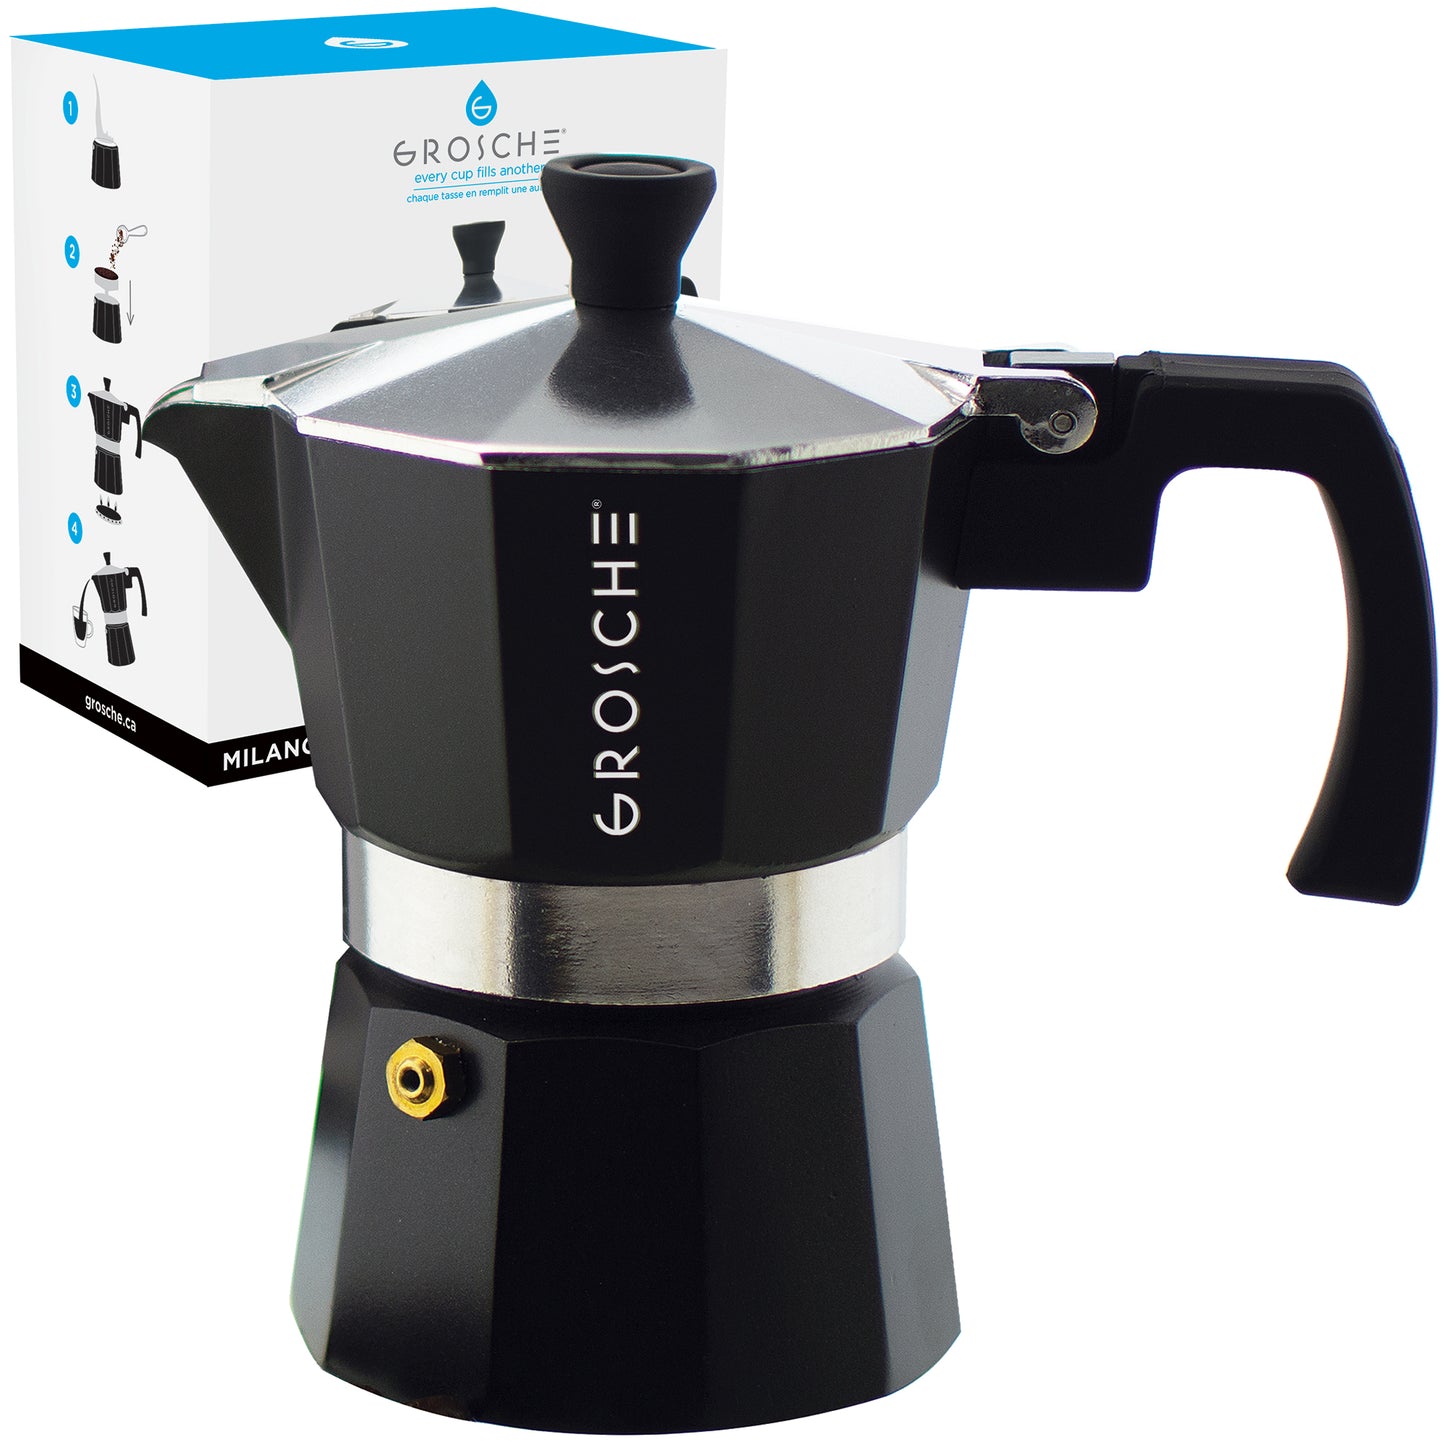 GROSCHE - Stovetop Espresso Coffee Maker 3 cup Milano